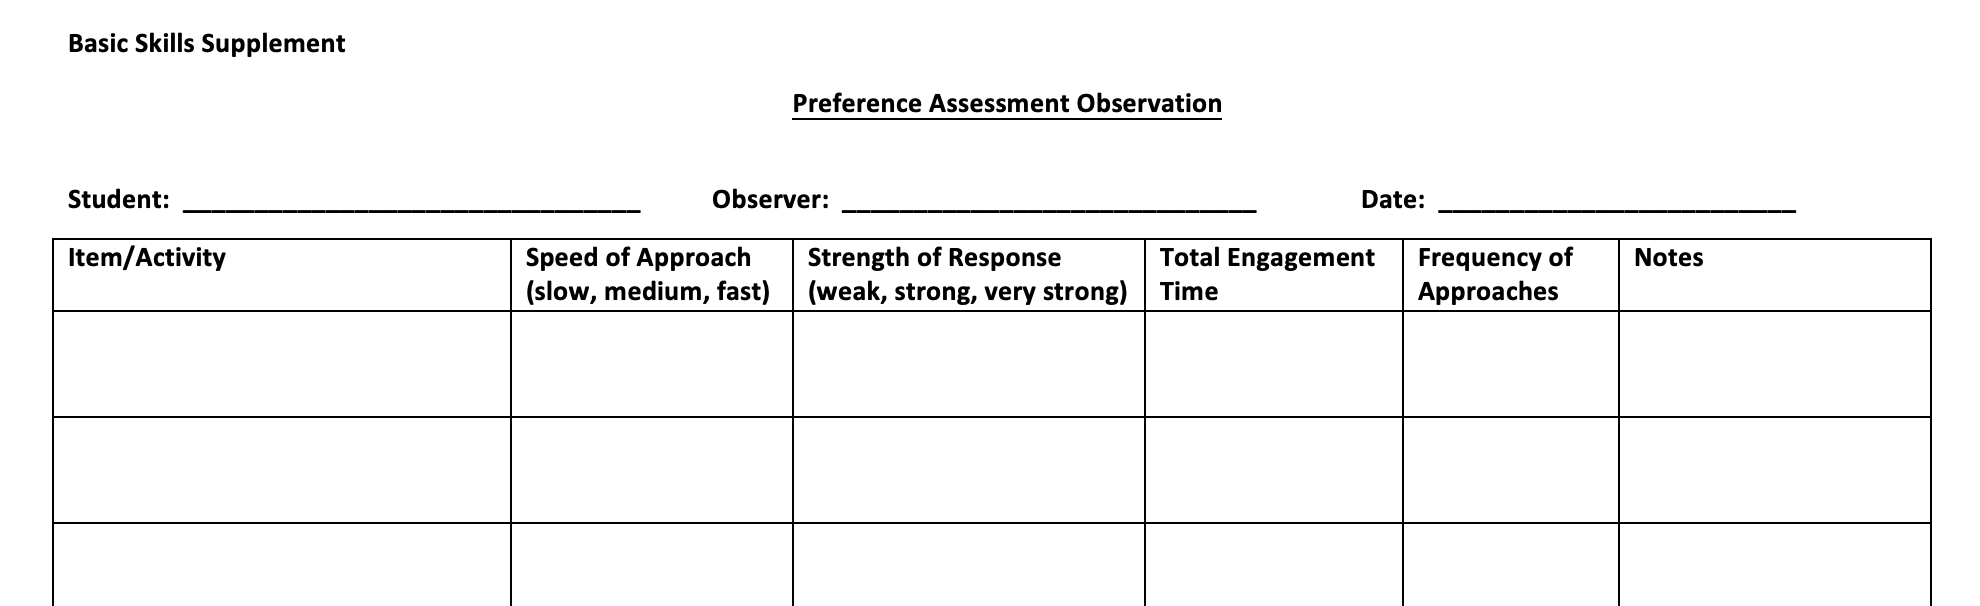 Preference Assessment Observation